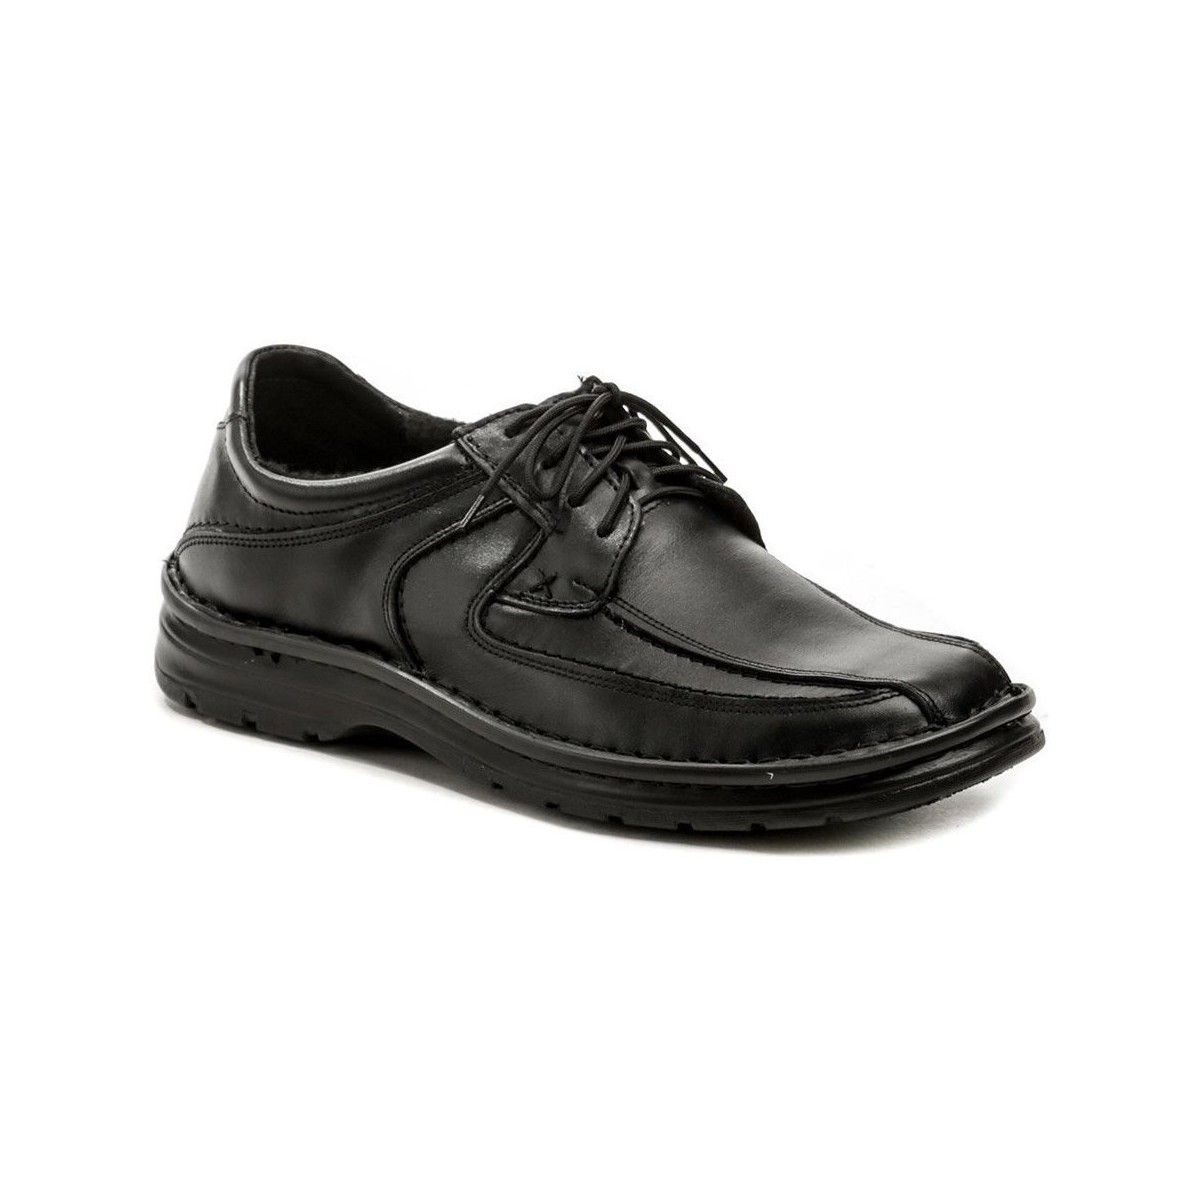 Boty Muži Šněrovací polobotky  & Šněrovací společenská obuv Wawel PA410F černé pánské polobotky Černá